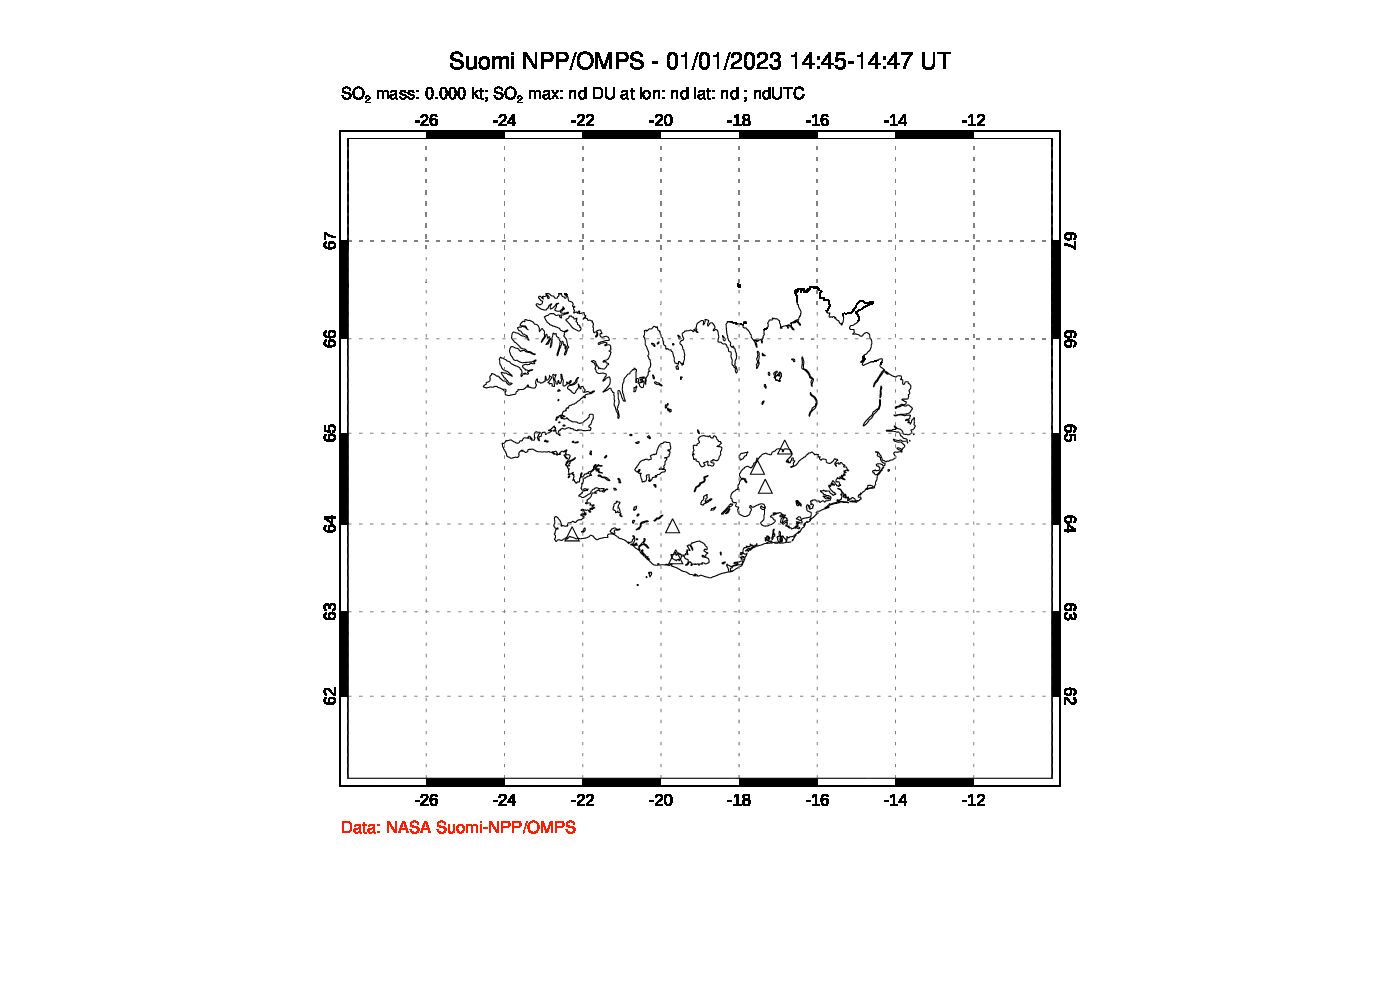 A sulfur dioxide image over Iceland on Jan 01, 2023.